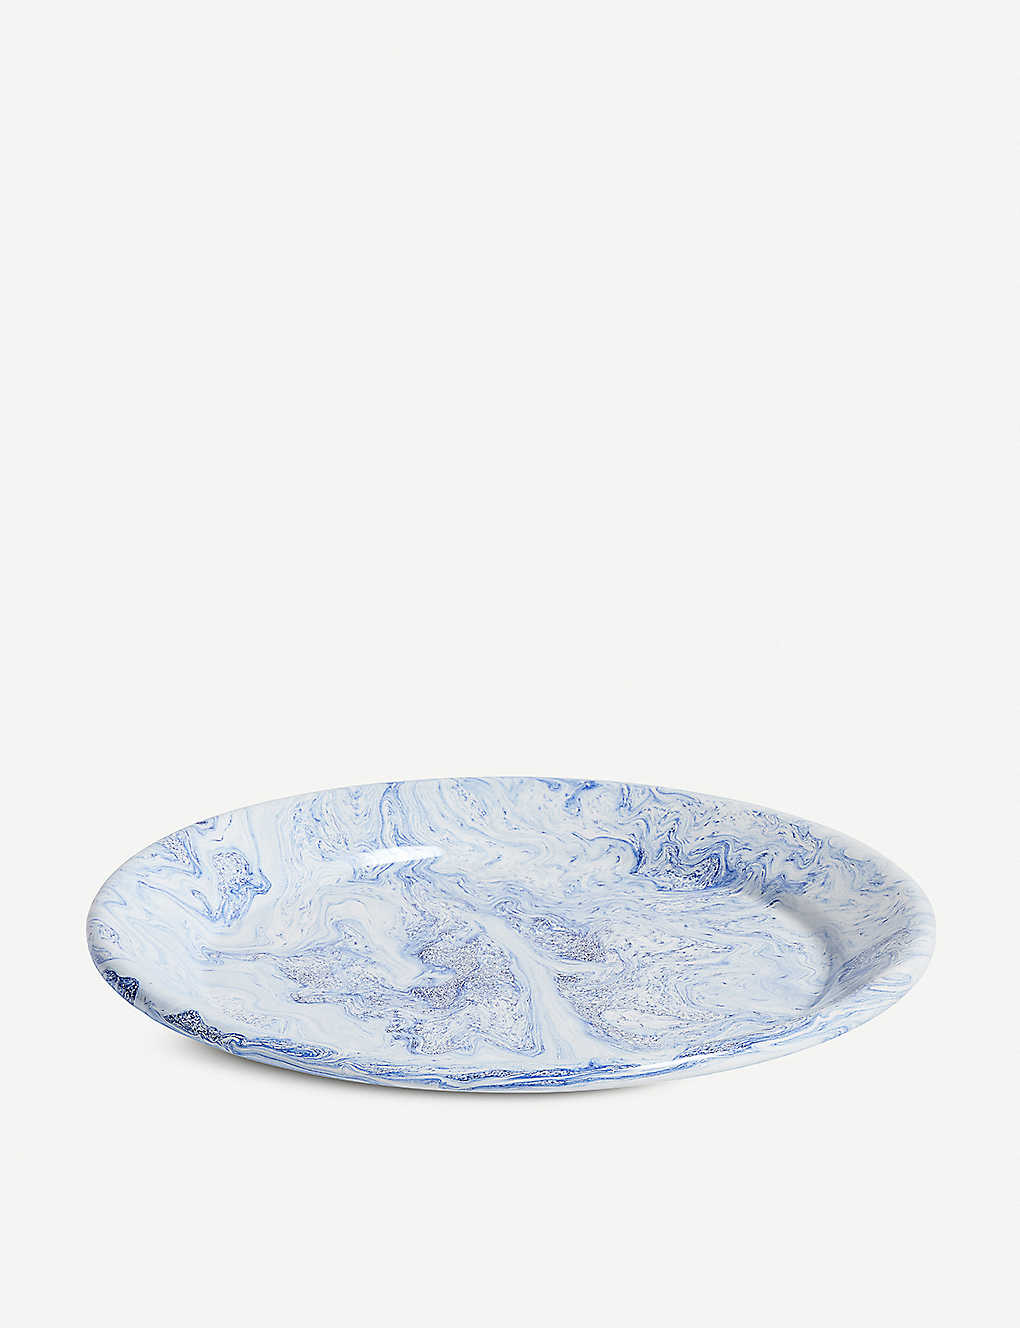 ENAMELLED DINNER PLATE IN BLUE BY HAY